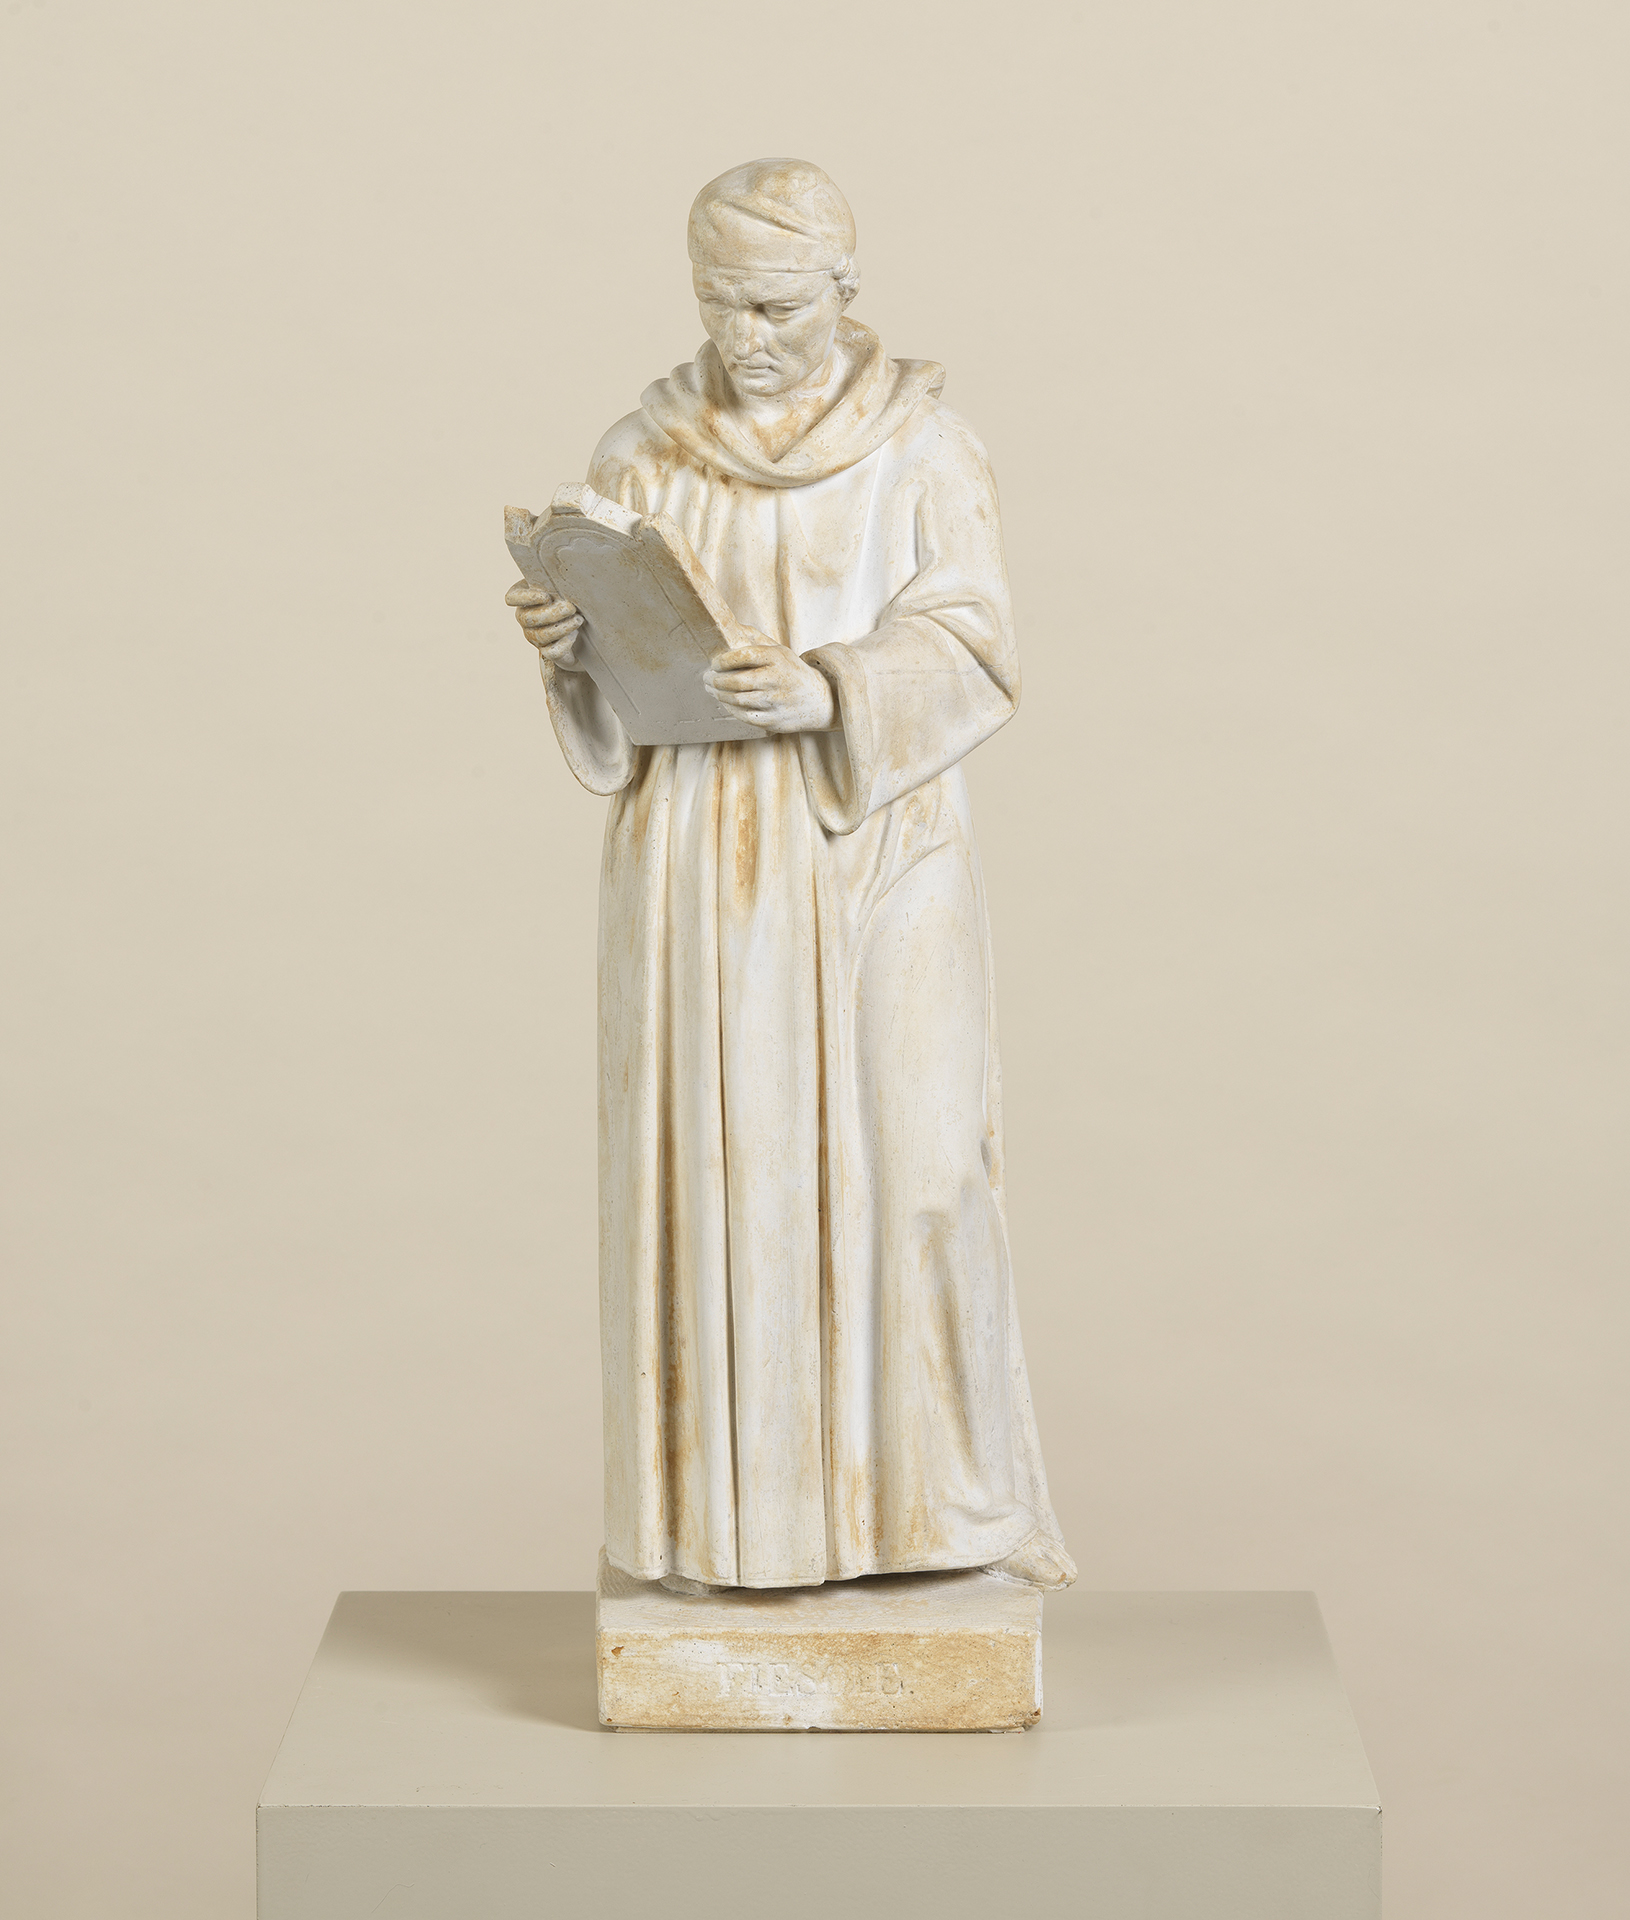 Das Kunstwerk zeigt den italienischen Renaissance Künstler Fra Giovanni Angelico. Der Maler steht aufrecht, hält eine Tafel in der Hand und betrachtet diese. Die Skulptur stammt von dem Bildhauer Ludwig Schwanthaler.